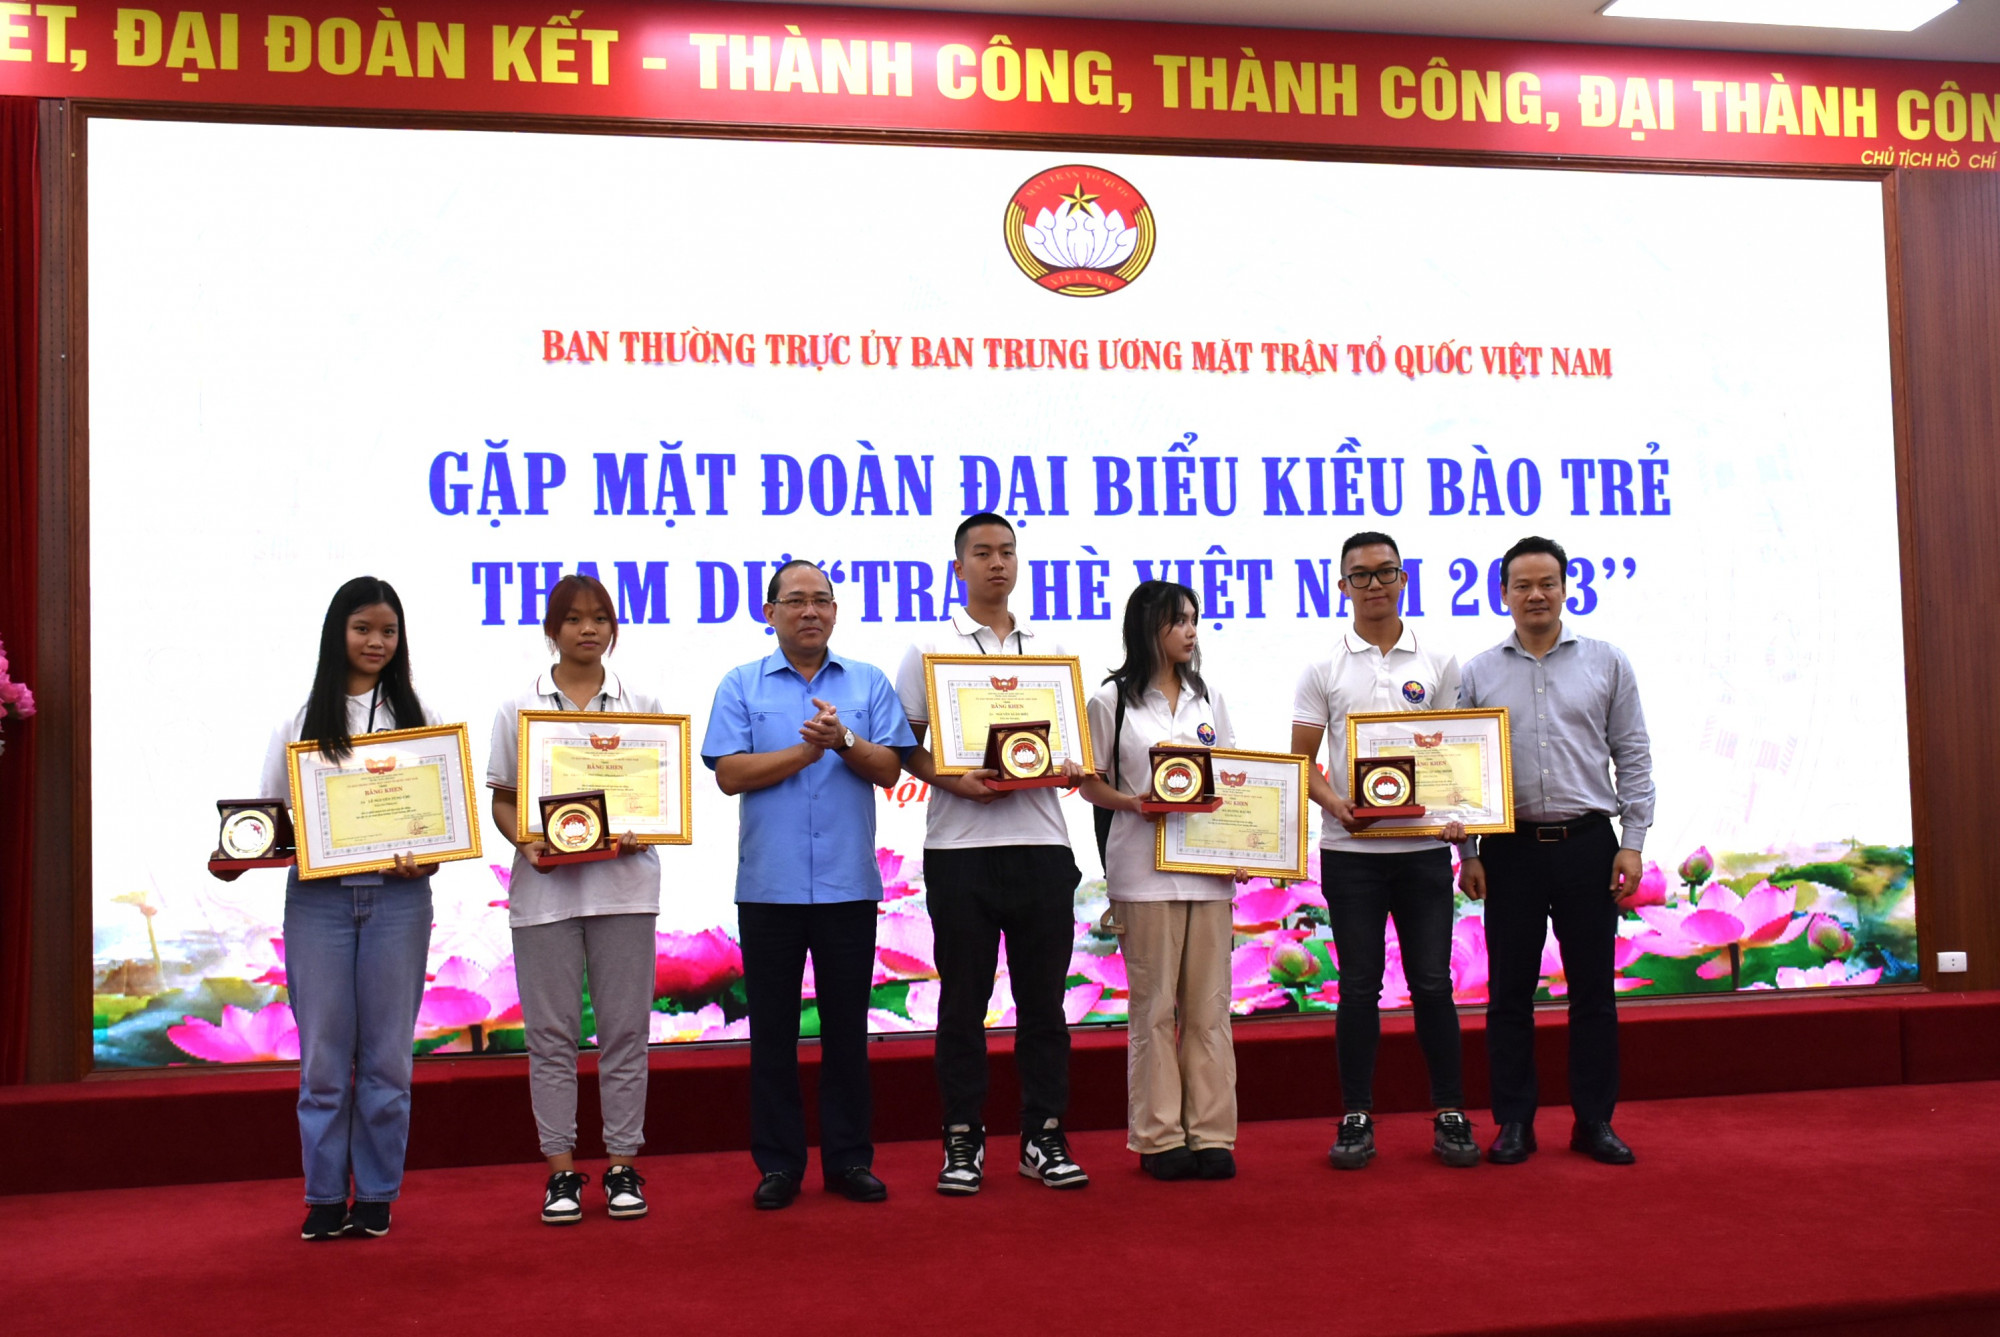 Một số kiều bào trẻ nhận bằng khen và biểu trưng của Ủy ban Trung ương MTTQ Việt Nam